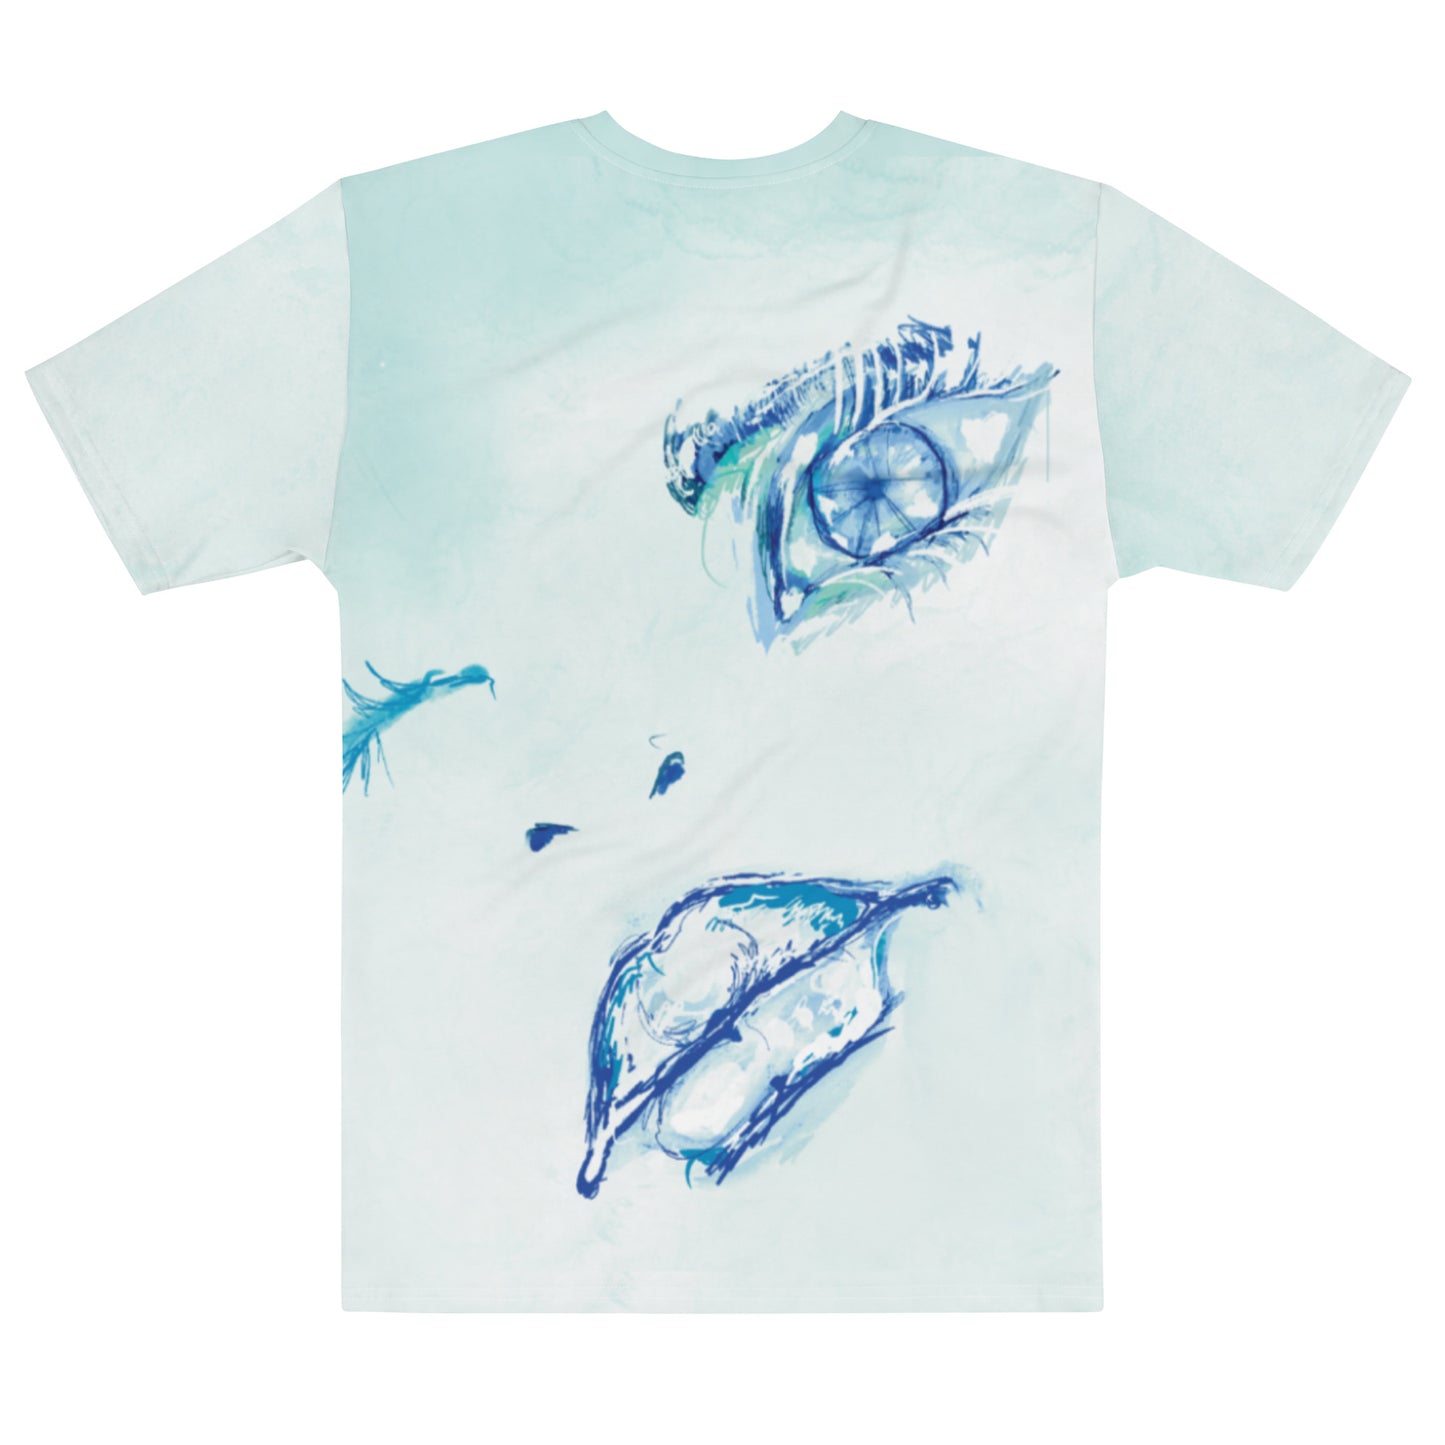 Alero Art 'Mended' Unisex T-Shirt